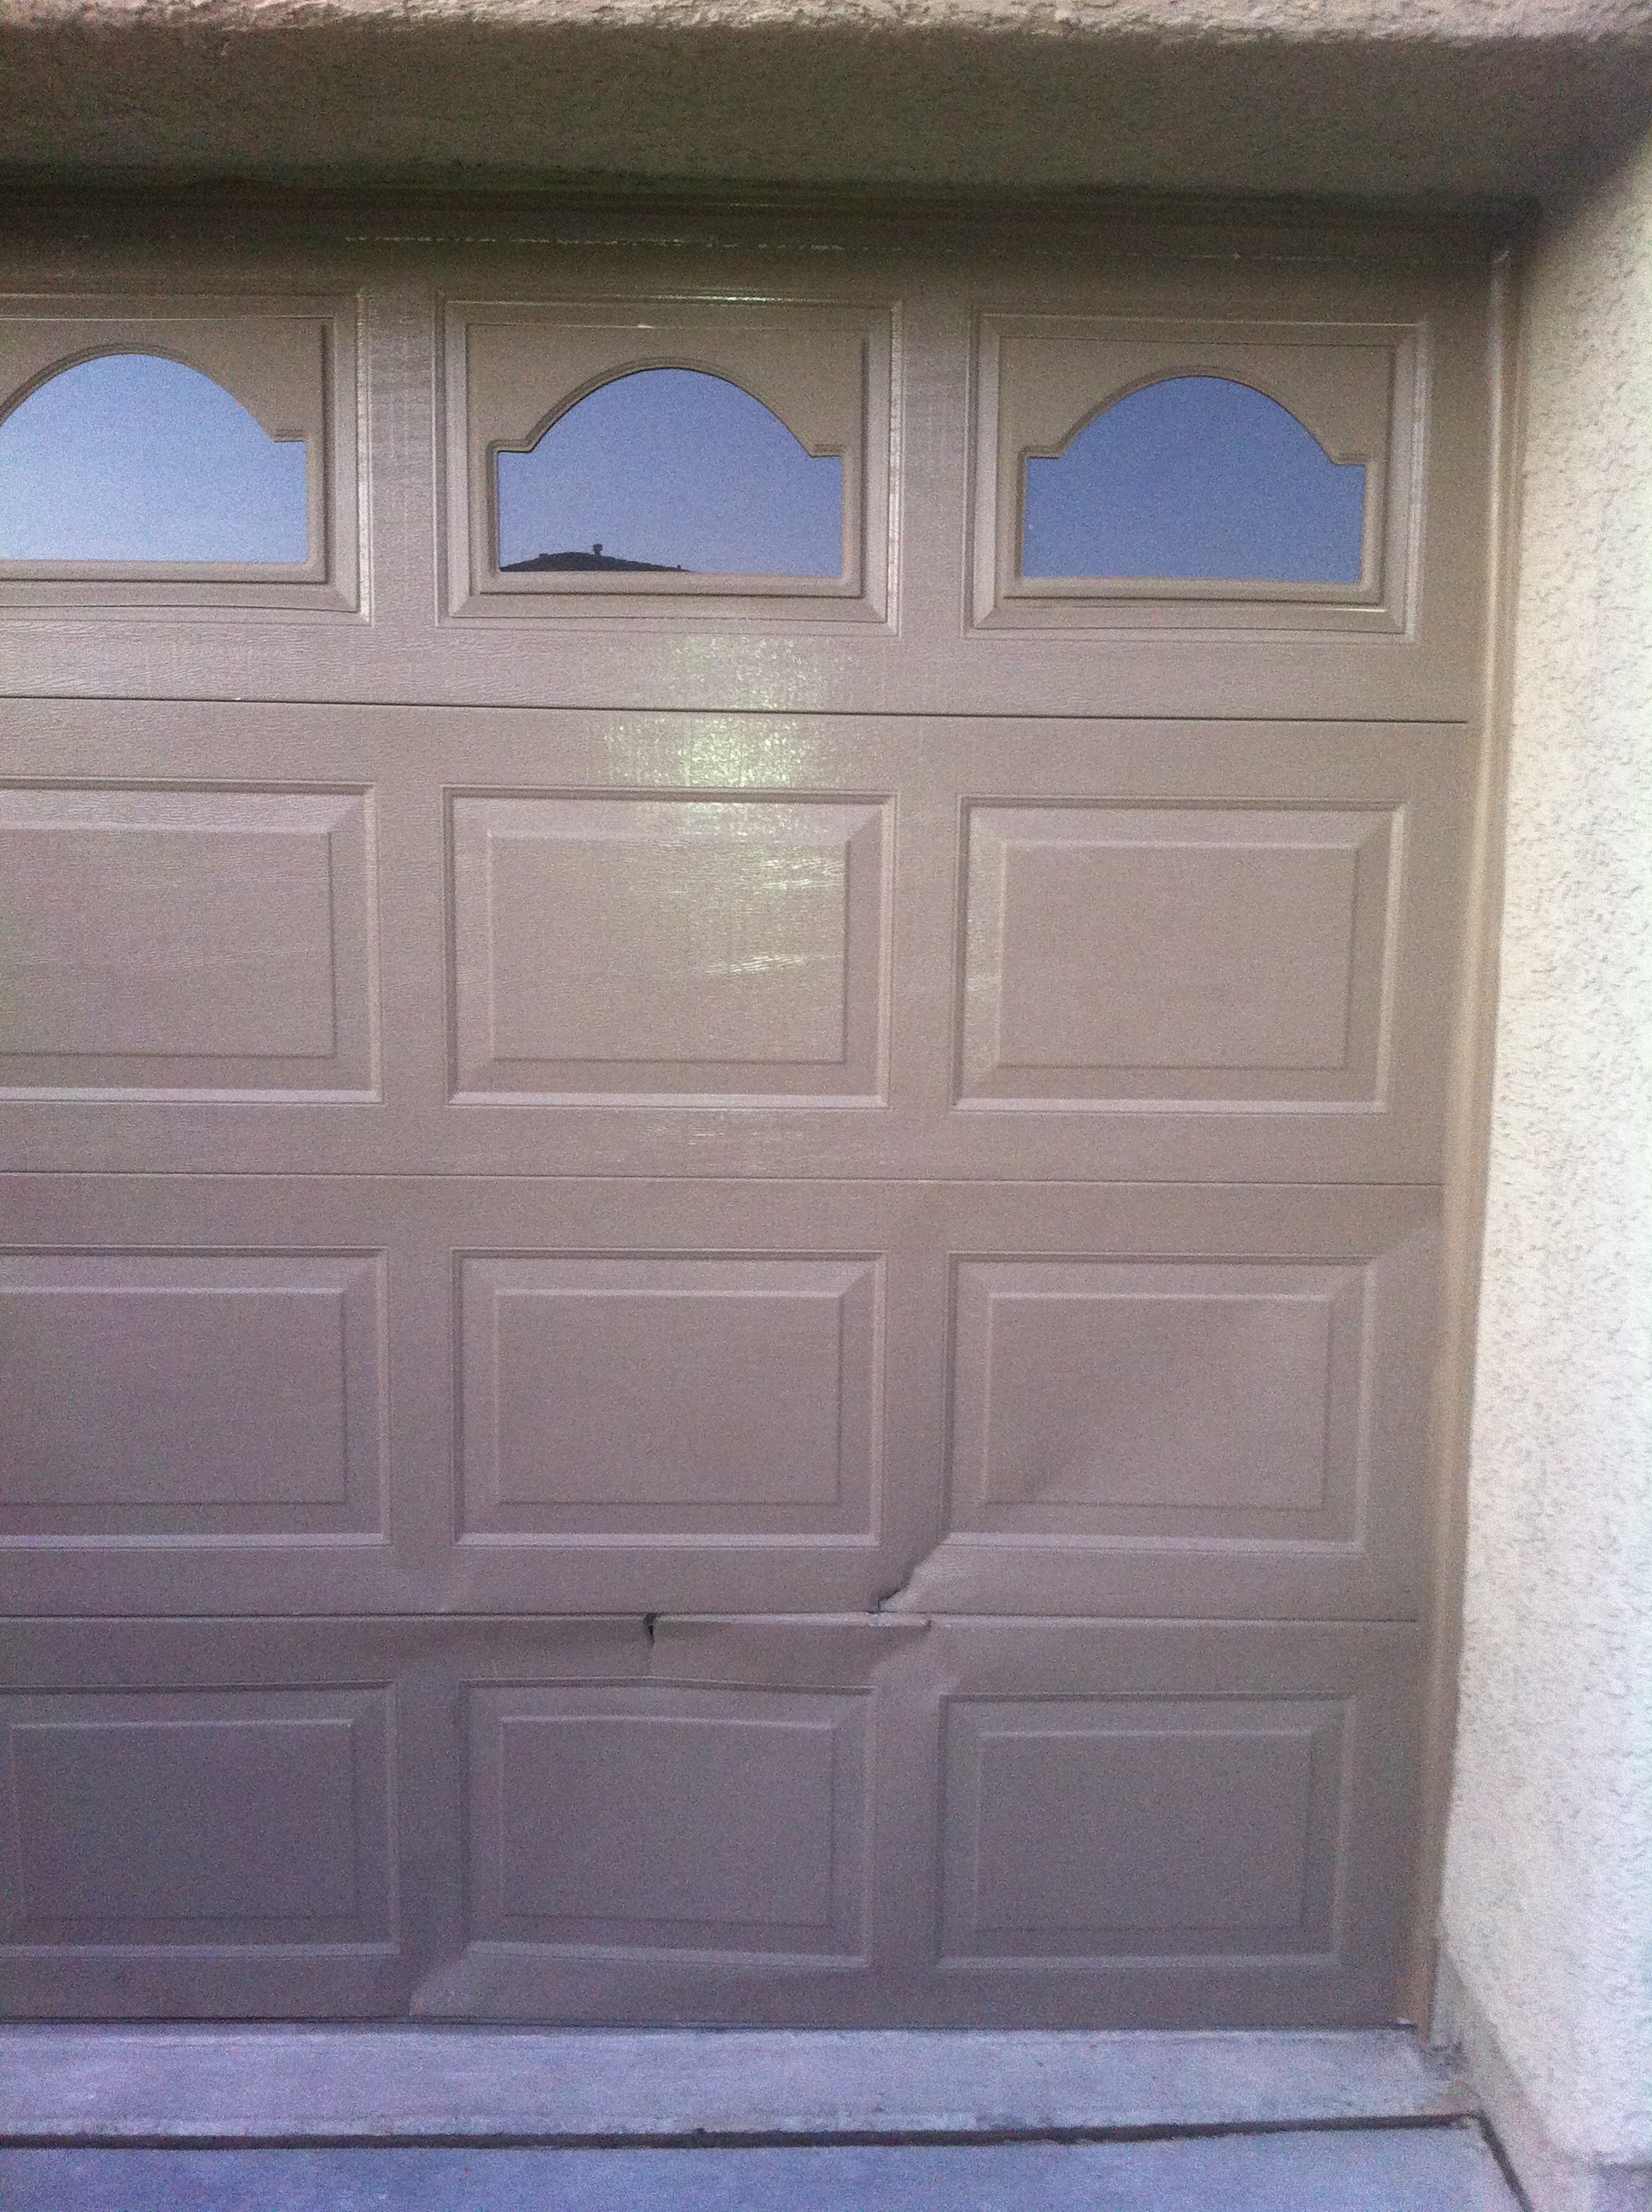 broken garage door panels